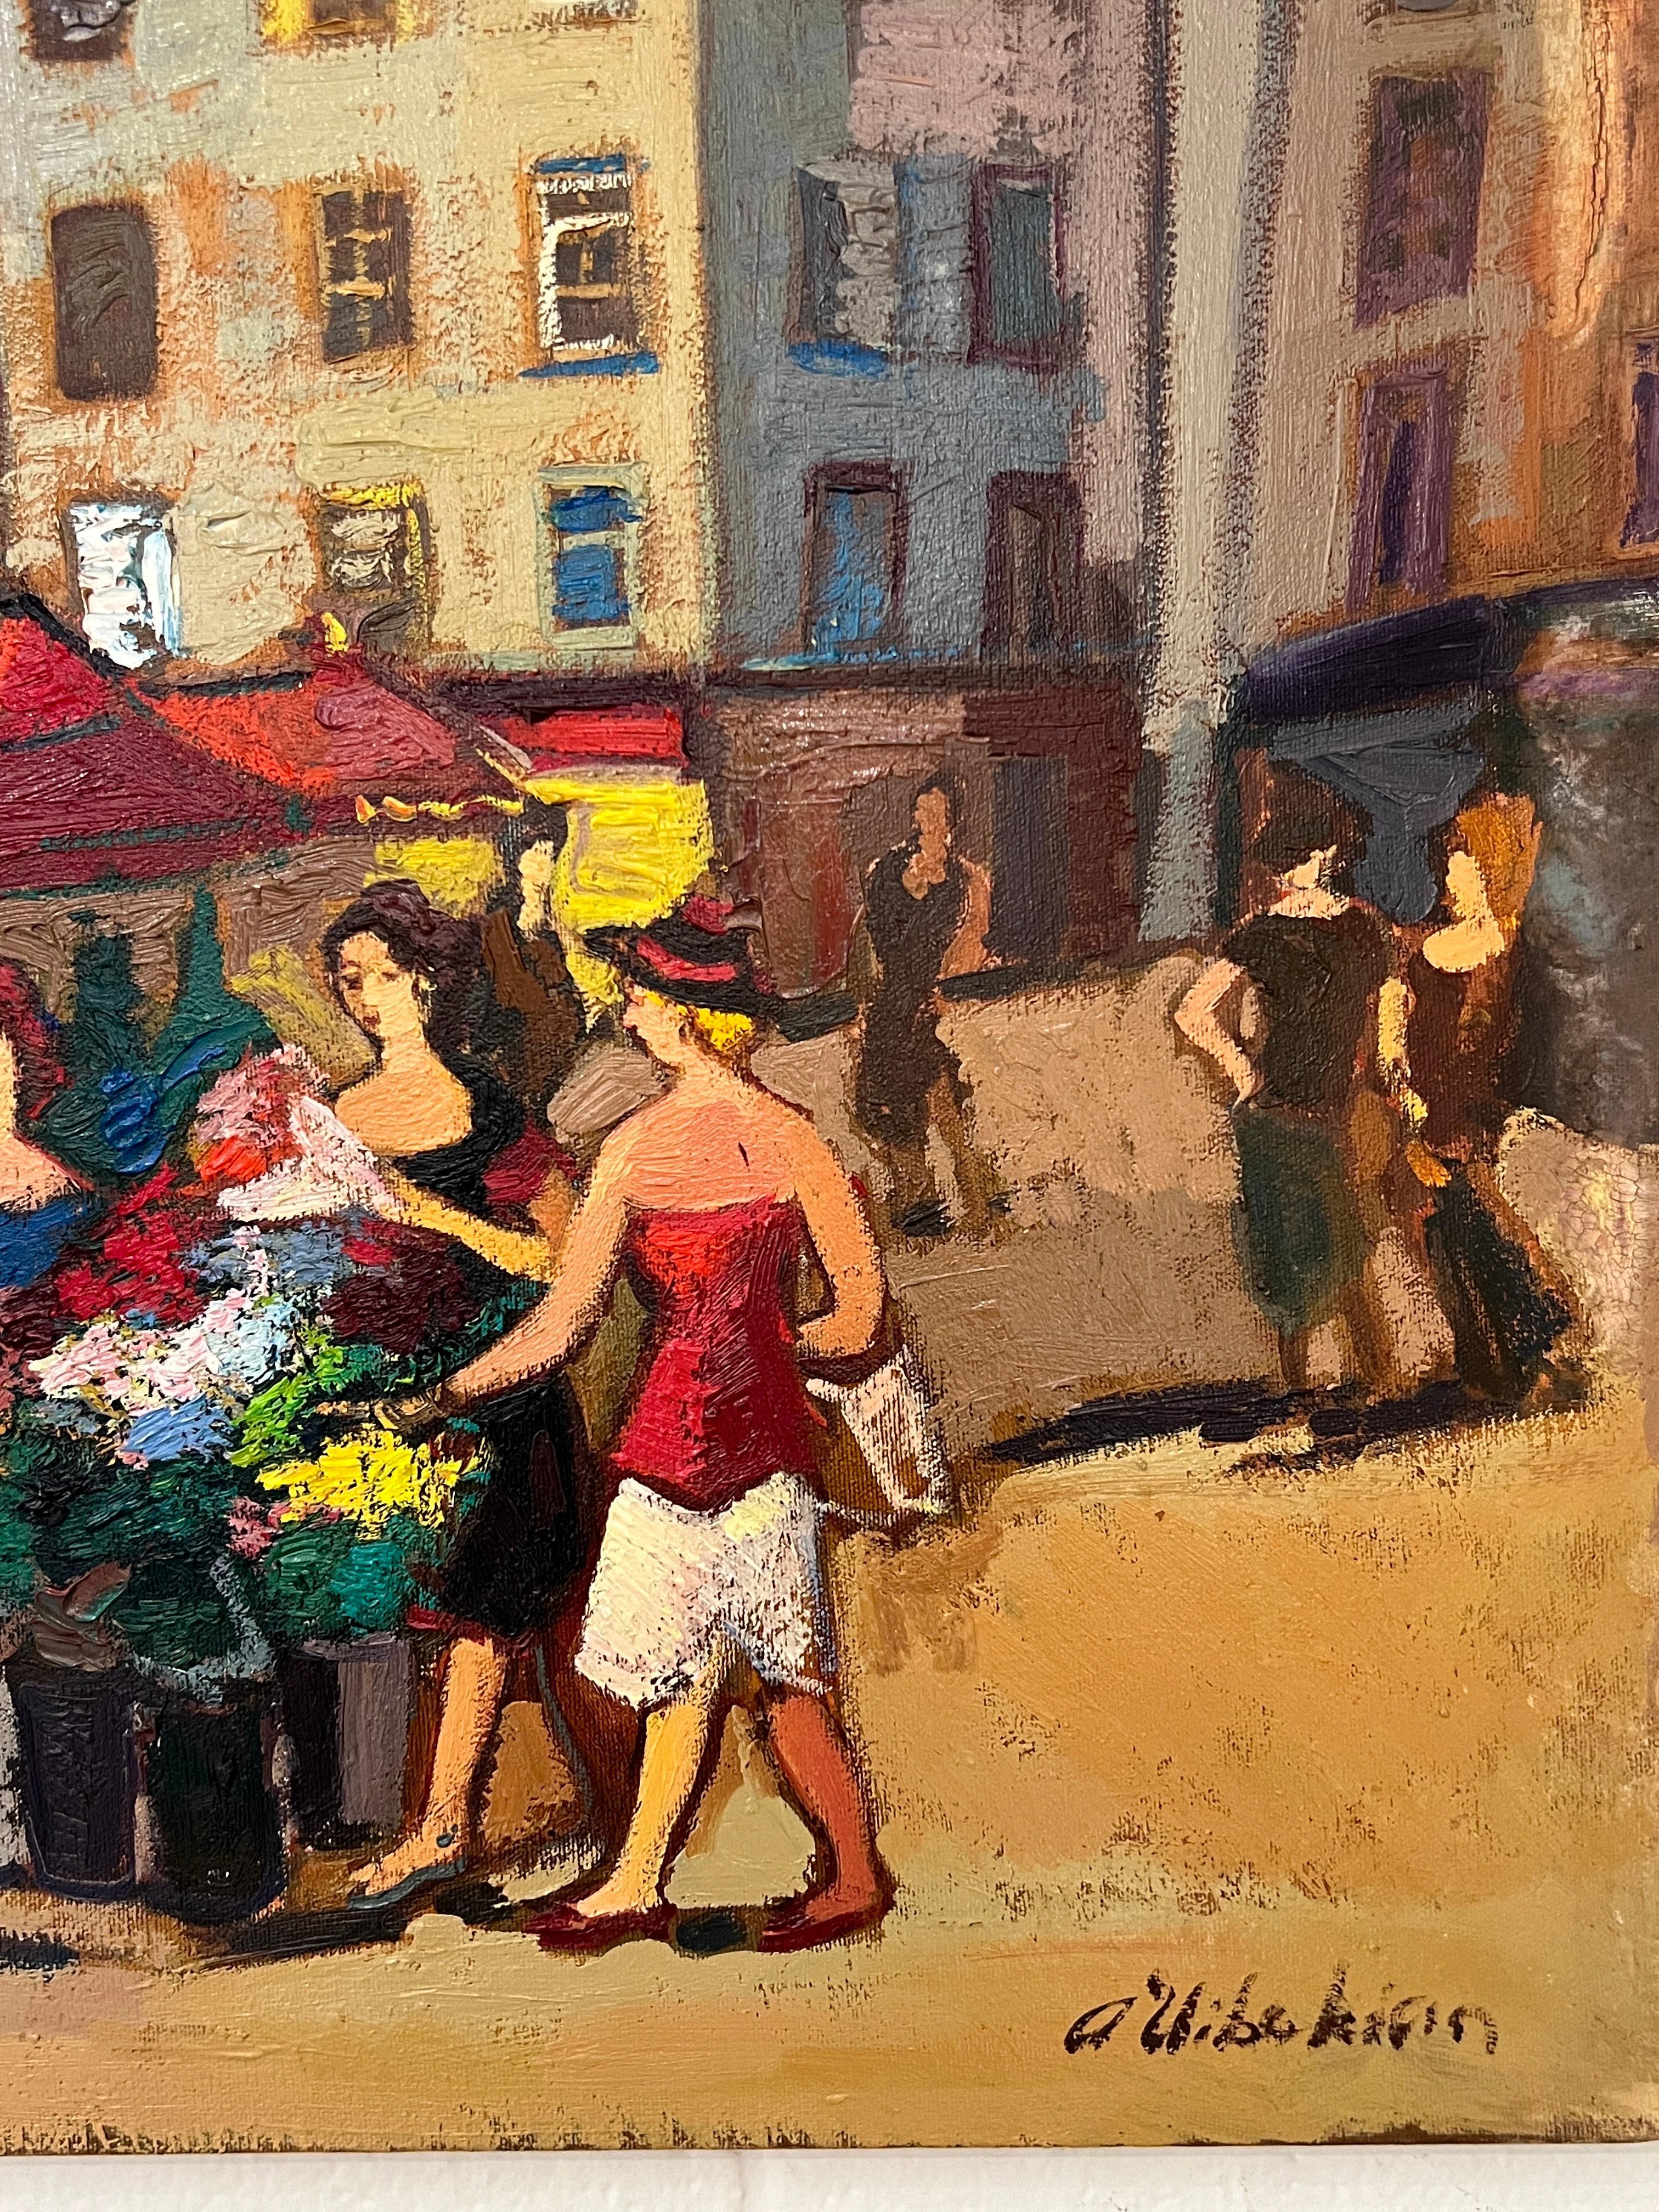 Dieses Werk von Areg Elibekian fängt die Essenz der Pariser Rue de Buci inmitten des geschäftigen Blumenmarktes ein. Die leuchtenden Farben laden den Betrachter ein und zeigen den einzigartigen Pinselstrich des Künstlers, der ihn von anderen